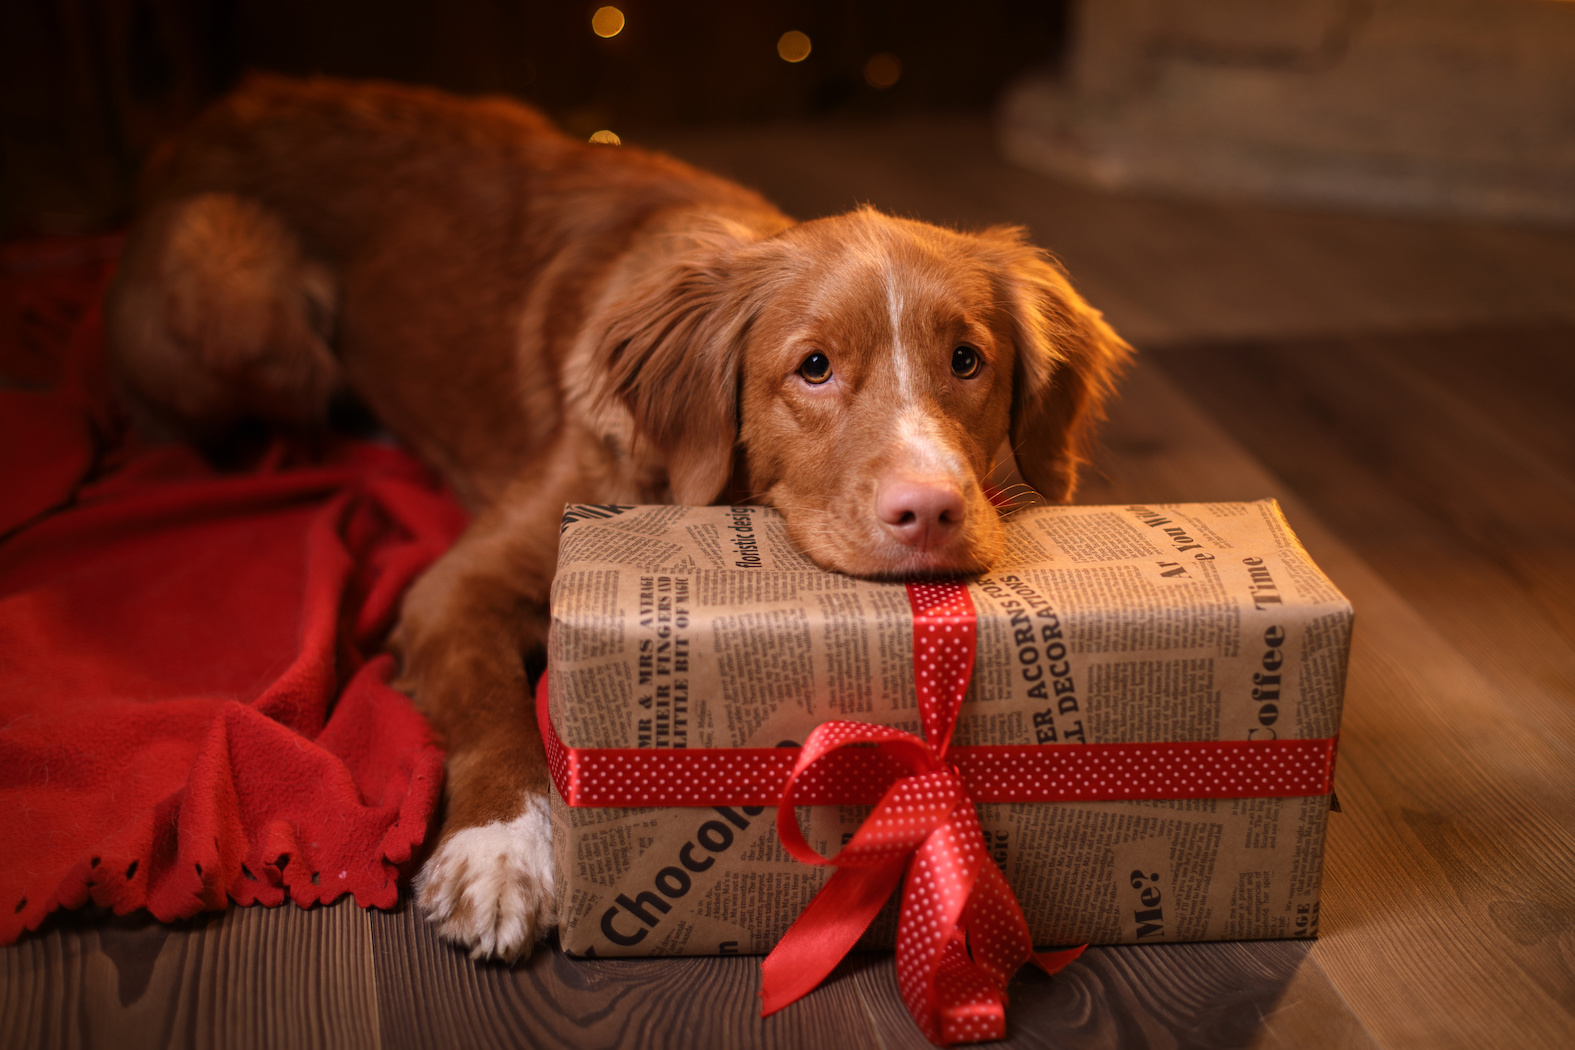 Dog Christmas Presents, Christmas Gifts for Dogs